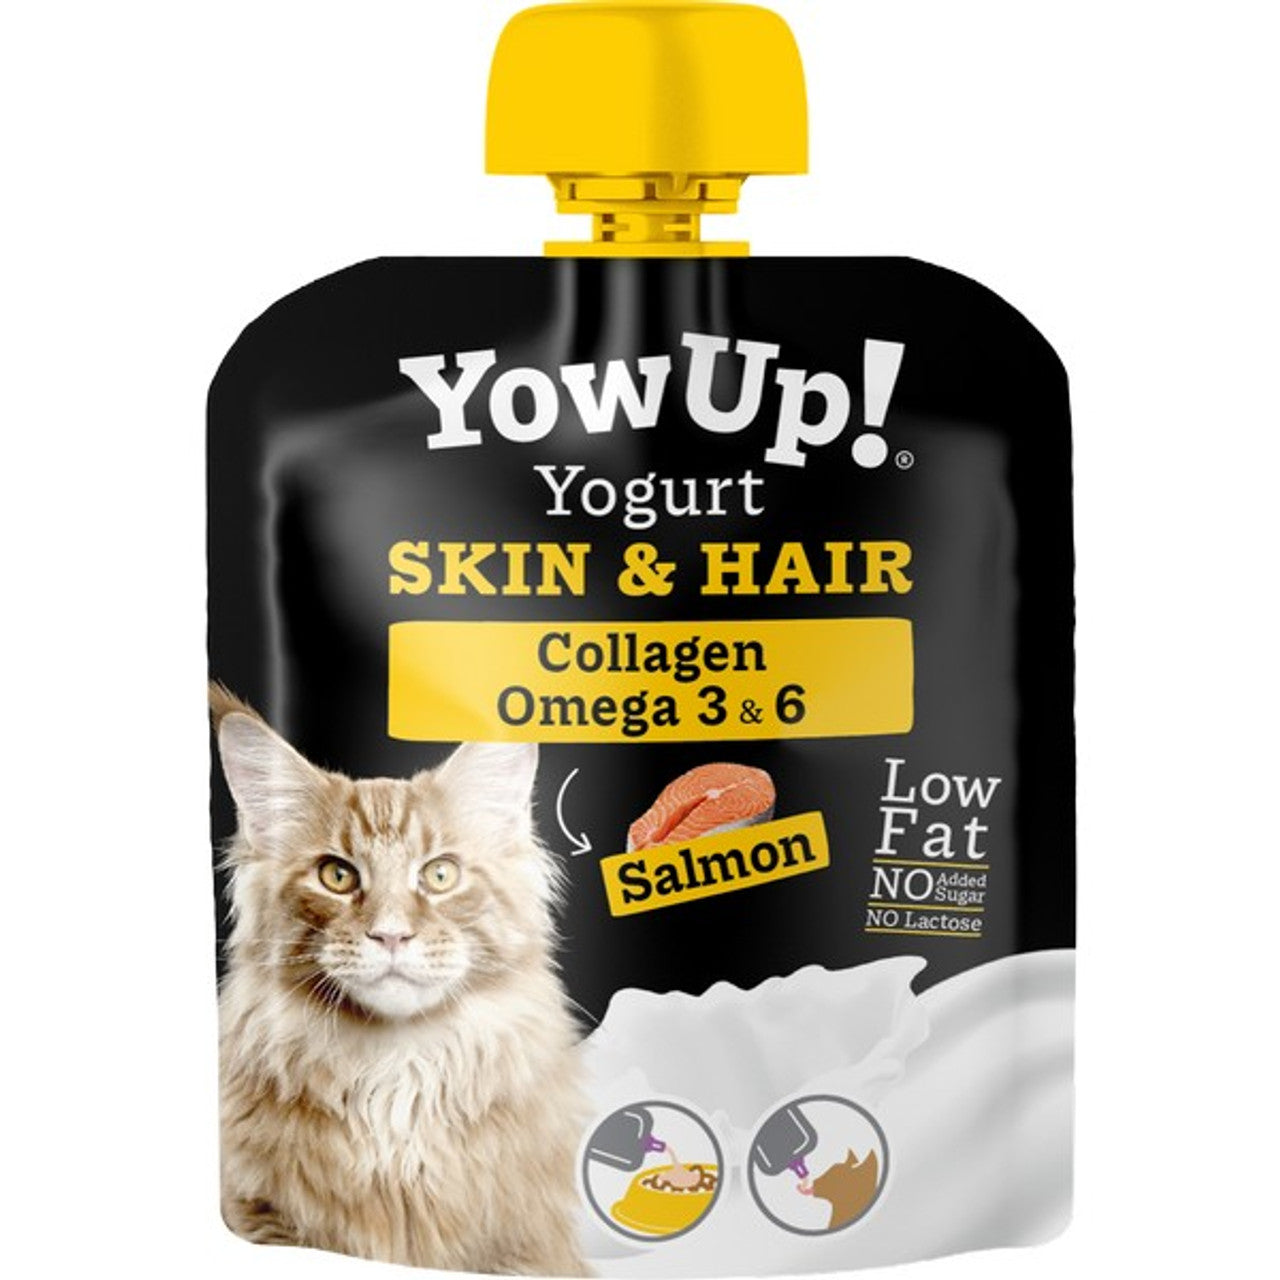 YowUp Cat Yogurt Skin & Hair 85g